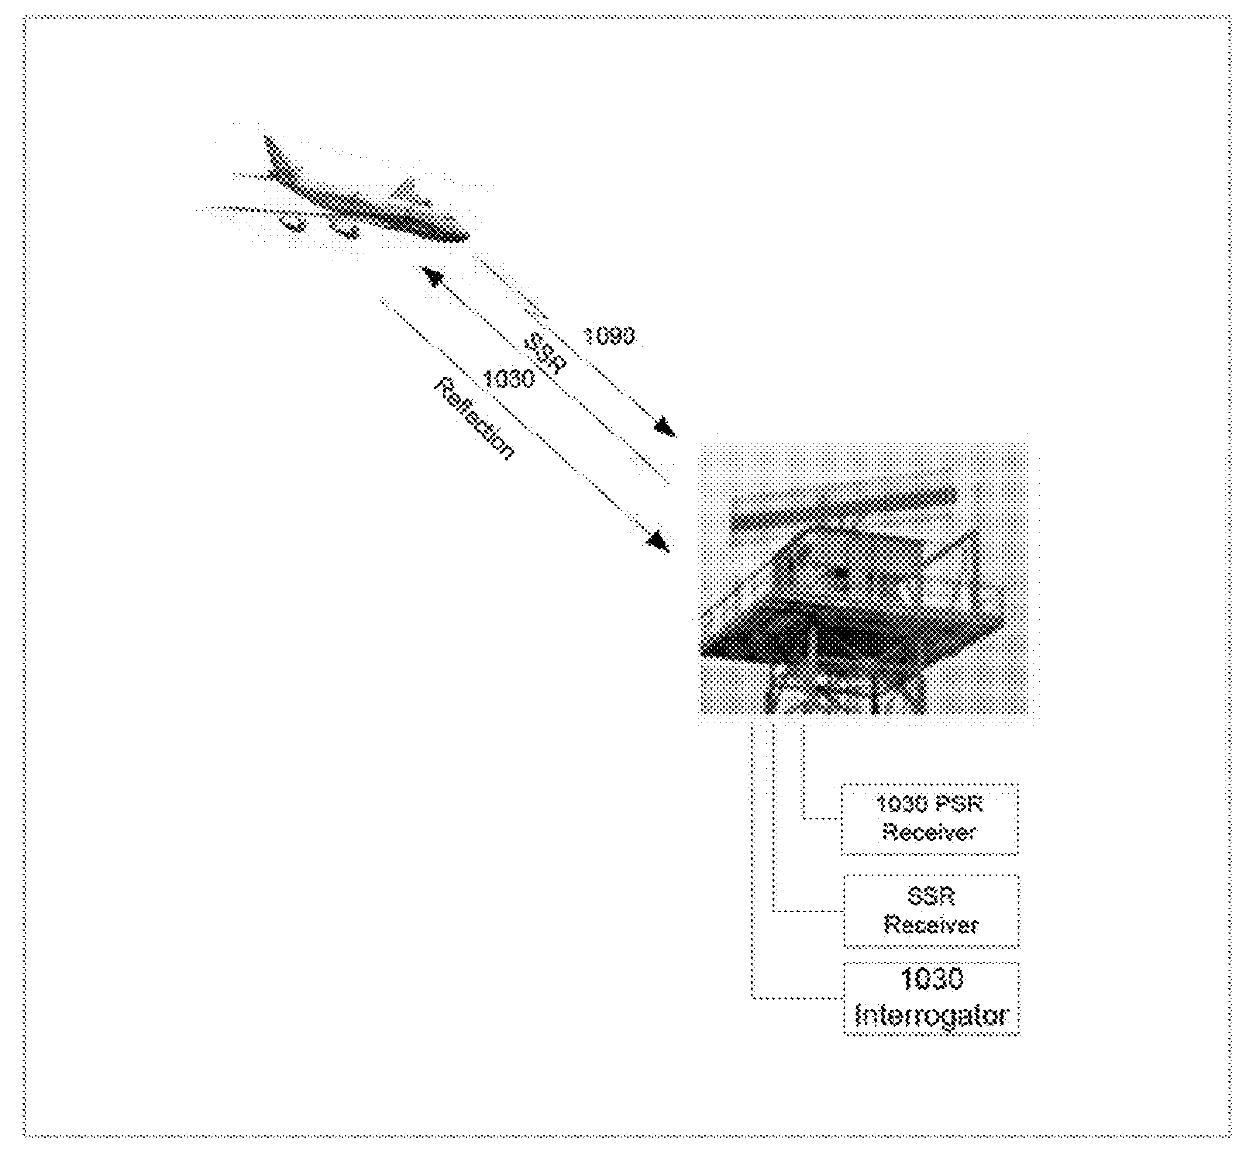 Secondary surveillance radar signals as primary surveillance radar